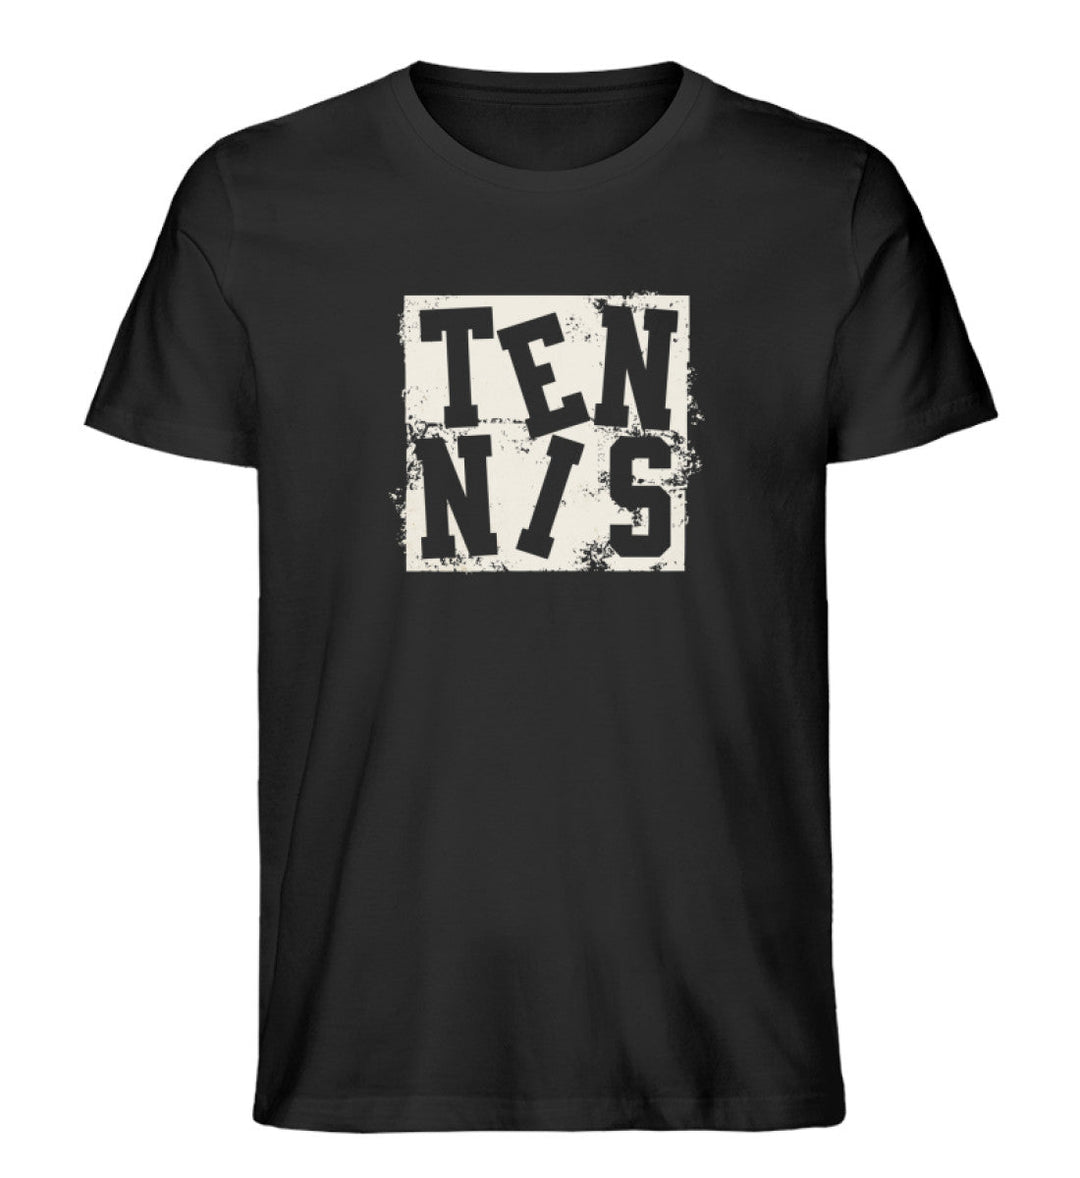 Tennis Grunge | Premium Herren T-Shirt - Matchpoint24 - Kleidung für Tennisfans